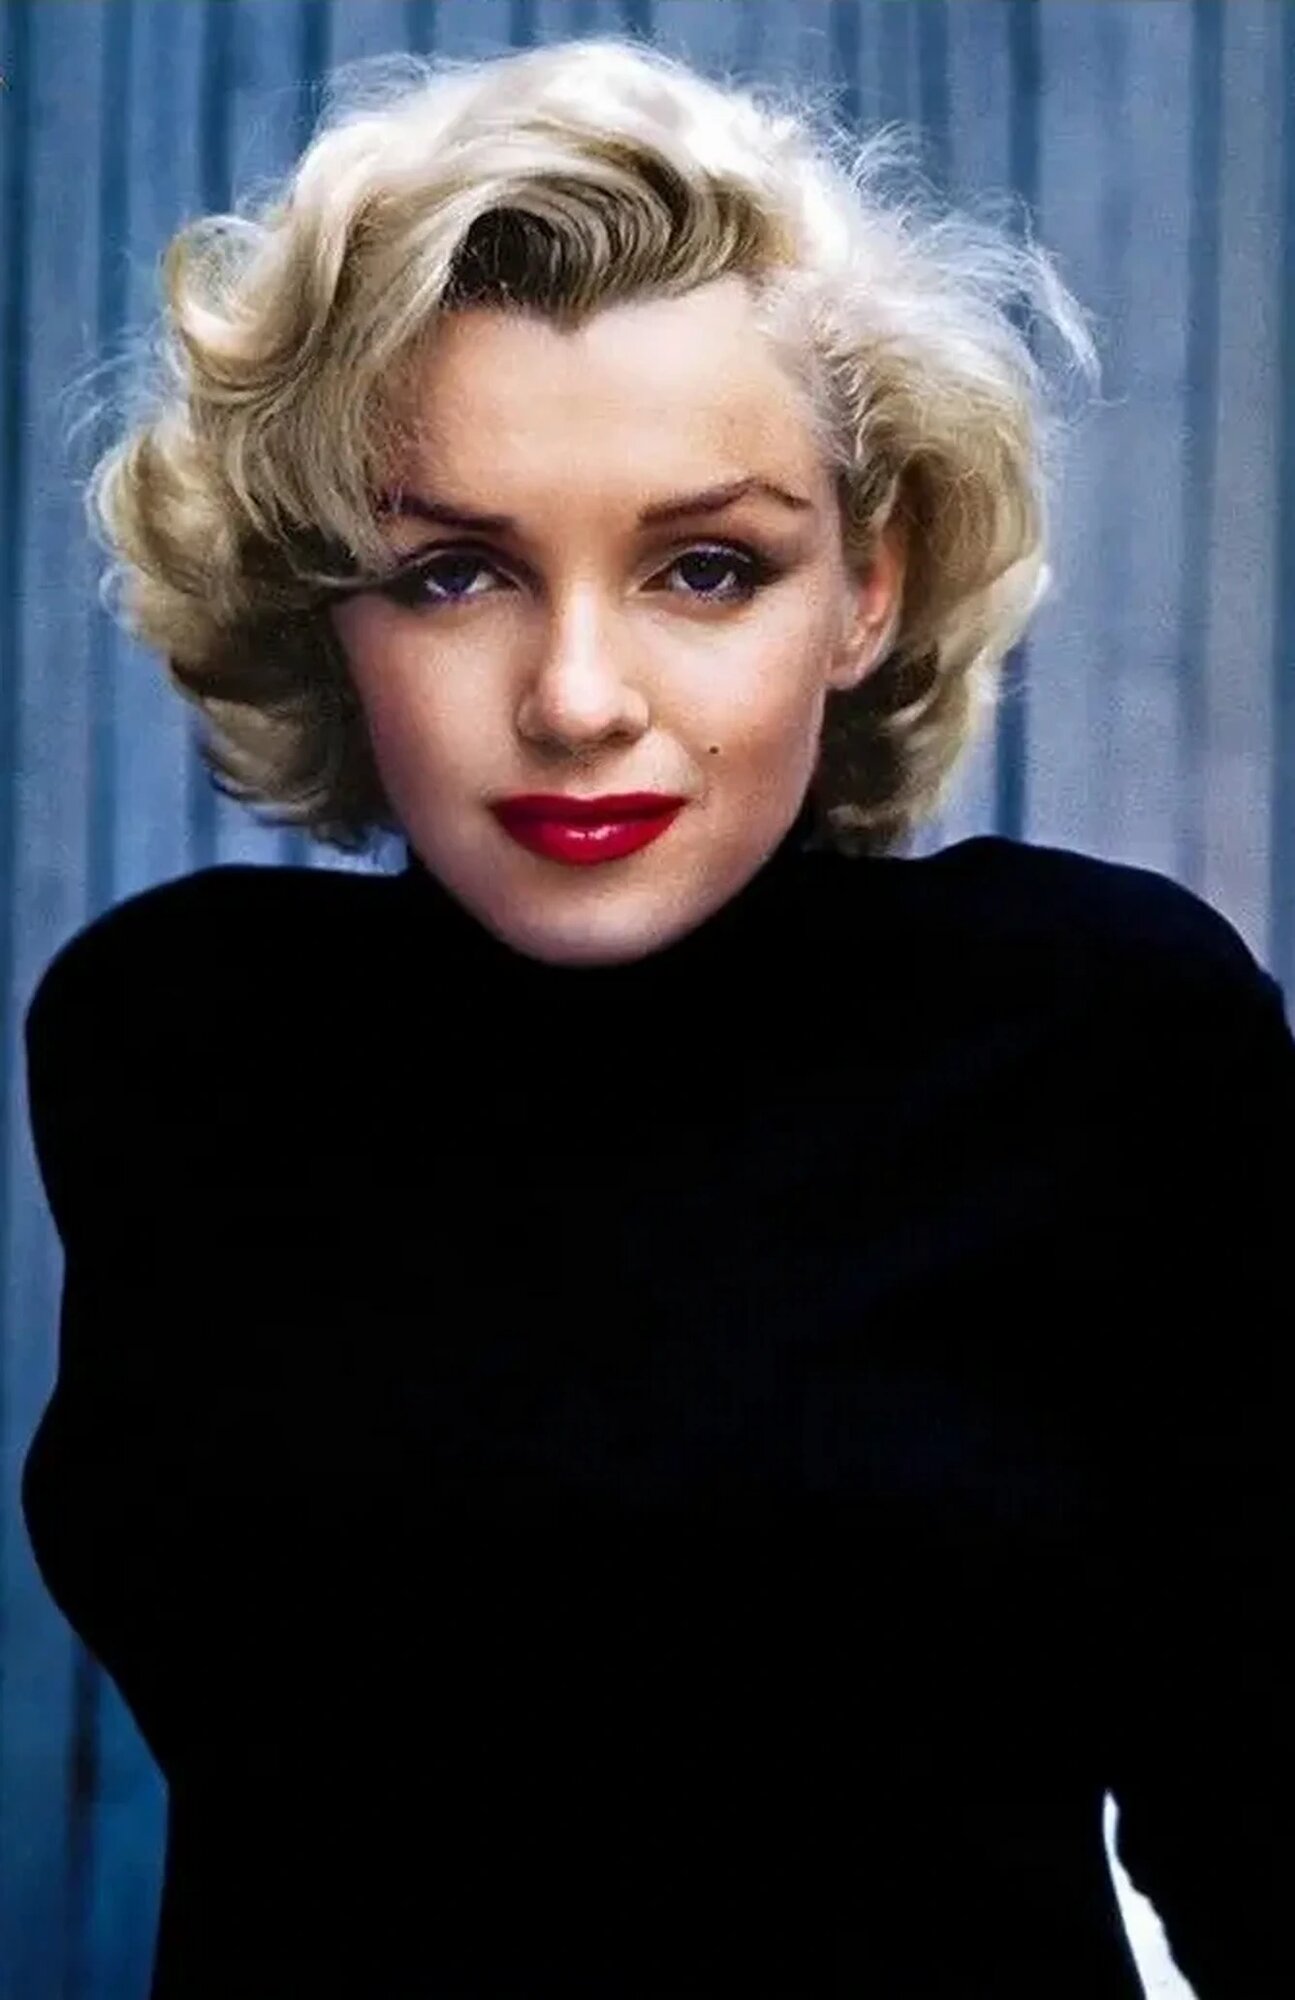 Плакат постер Мэрилин Монро. Marilyn Monroe на бумаге размер 21х30см